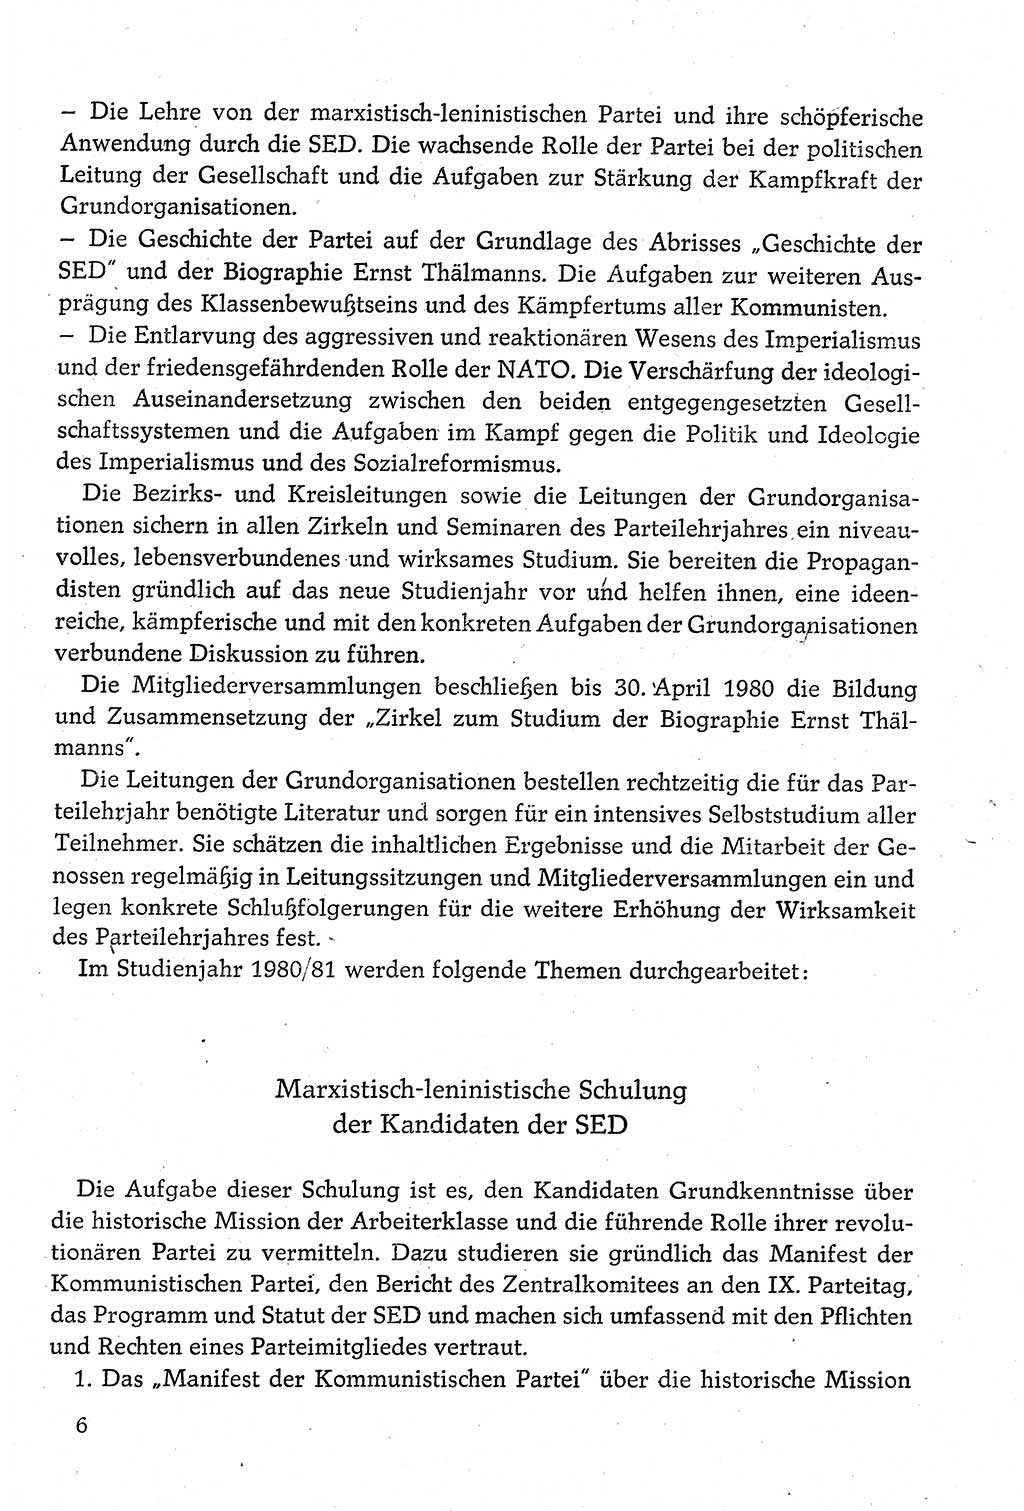 Dokumente der Sozialistischen Einheitspartei Deutschlands (SED) [Deutsche Demokratische Republik (DDR)] 1980-1981, Seite 6 (Dok. SED DDR 1980-1981, S. 6)